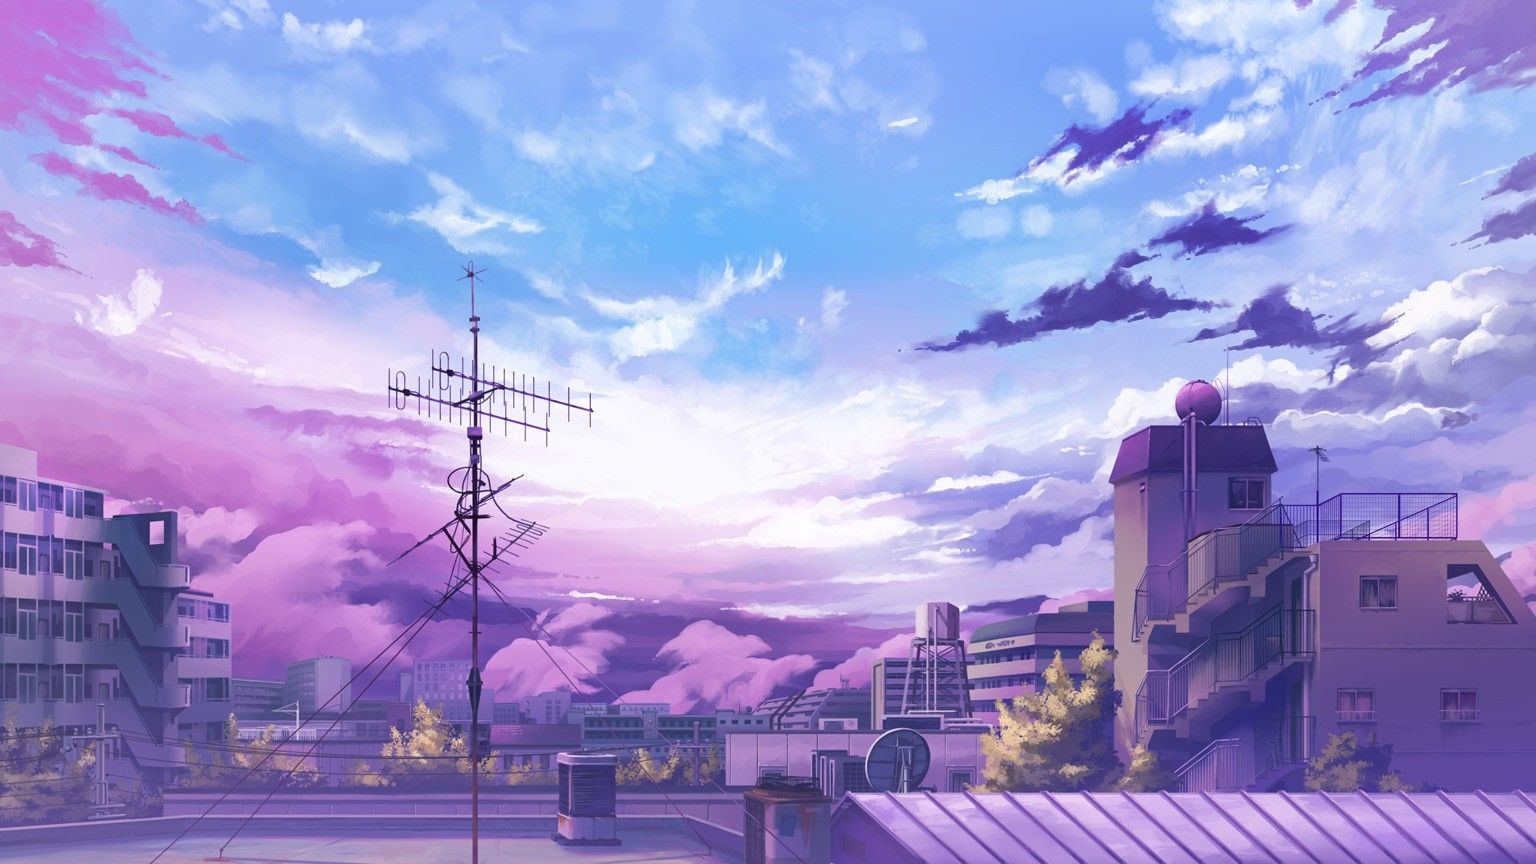 Anime wallpaper anime scenery wallpaper anime scenery scenery wallpaper